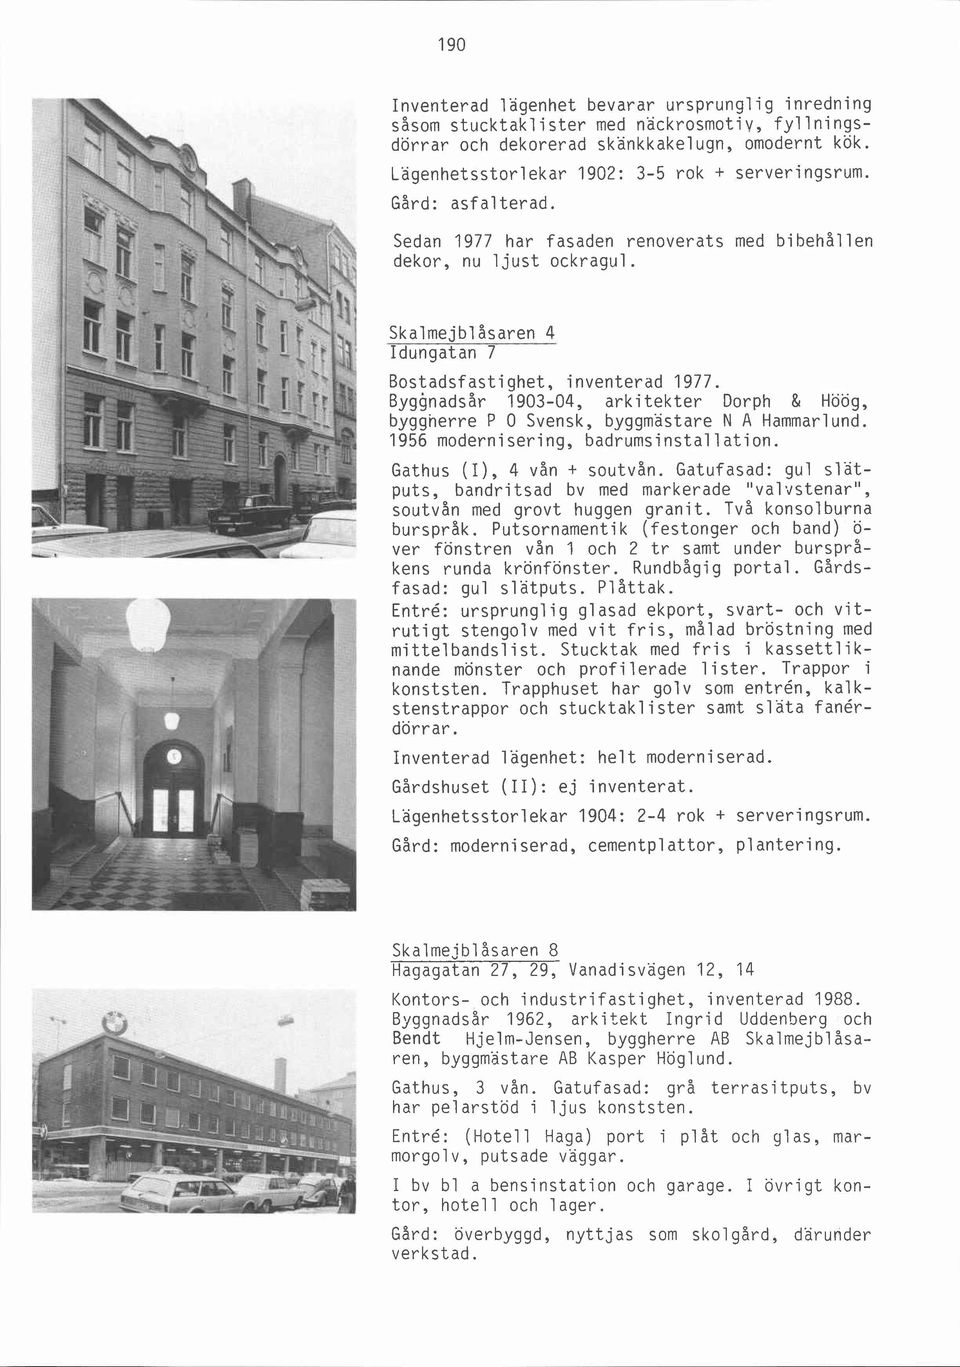 Byggnadsår 1903-04, arkitekter Dorph & Höög, byggnerre P O Svensk, byggmästare N A Hammarlund. 1956 modernisering, badrumsinstallation. Gathus (I), 4 vån + soutvån.